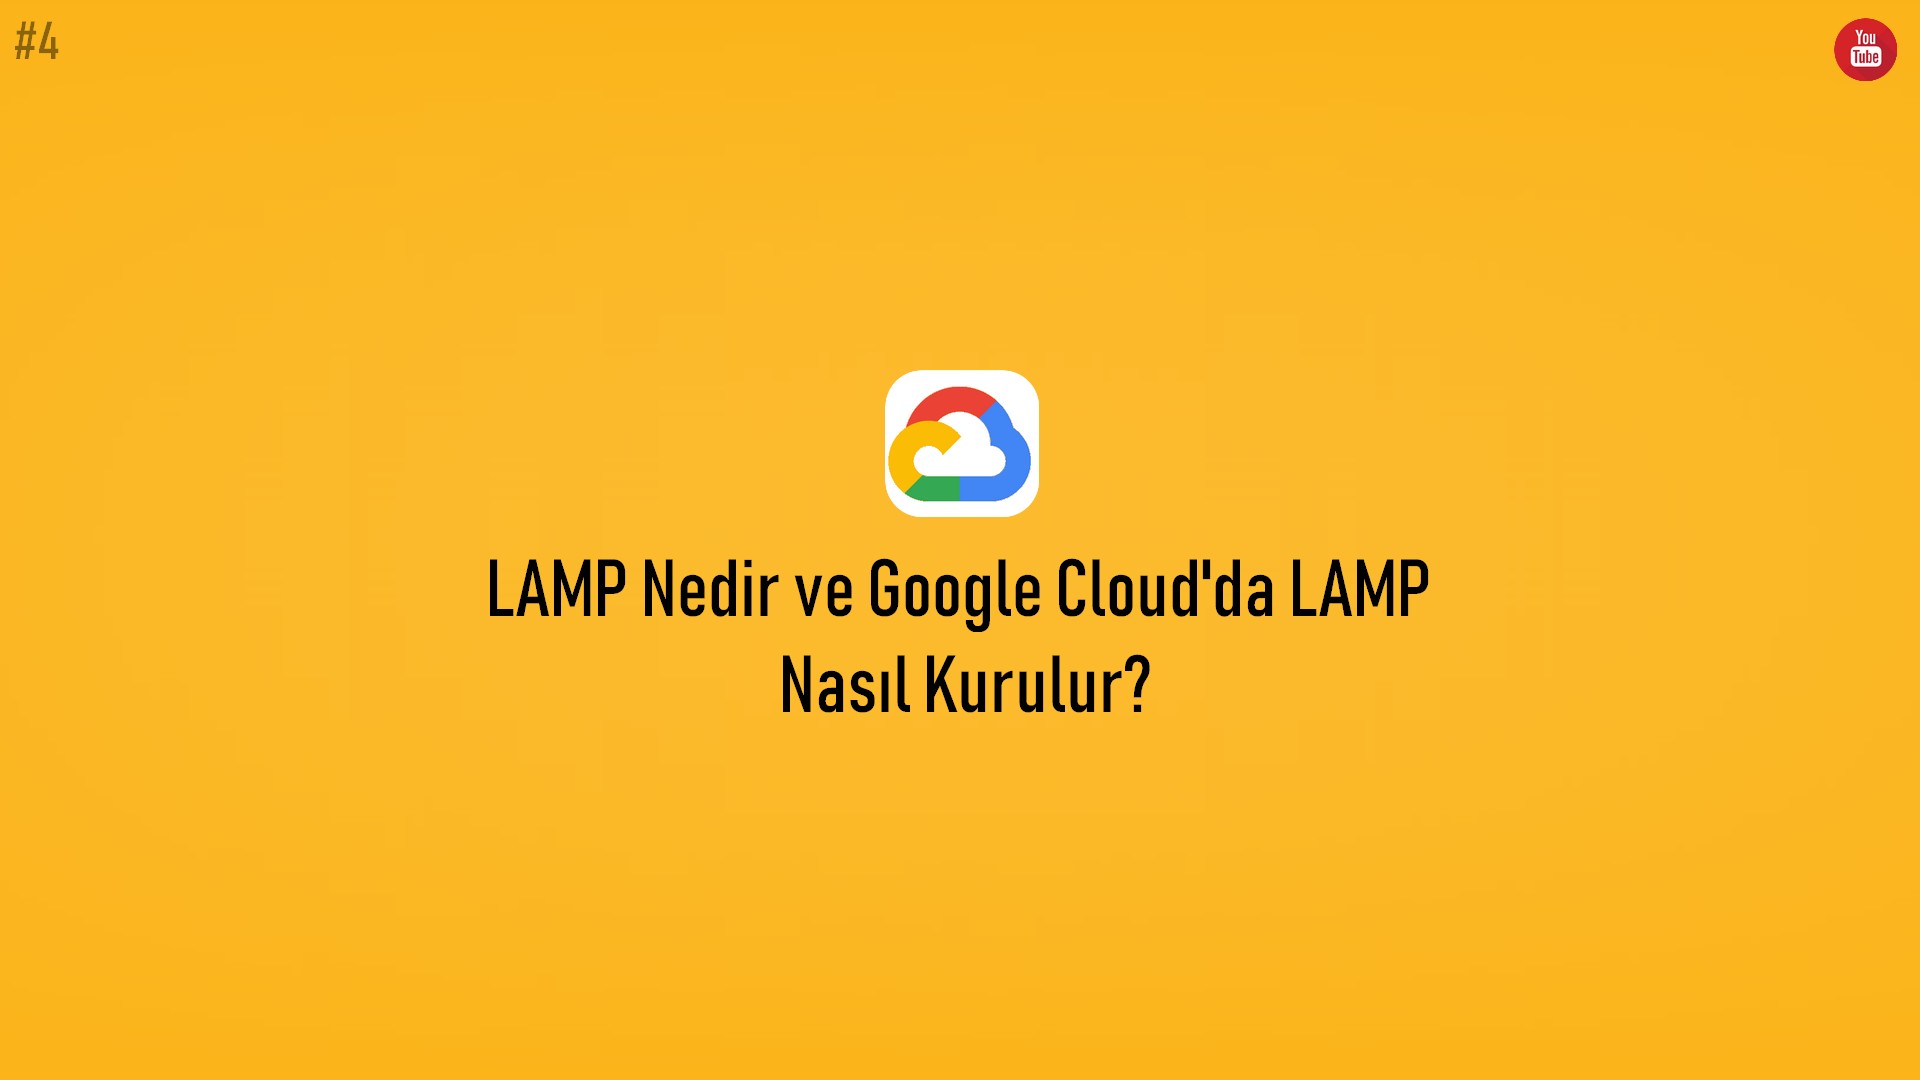 LAMP Nedir ve Google Cloud'da LAMP Nasıl Kurulur? (Video İçerik) başlıklı içeriğin kapak resmi.